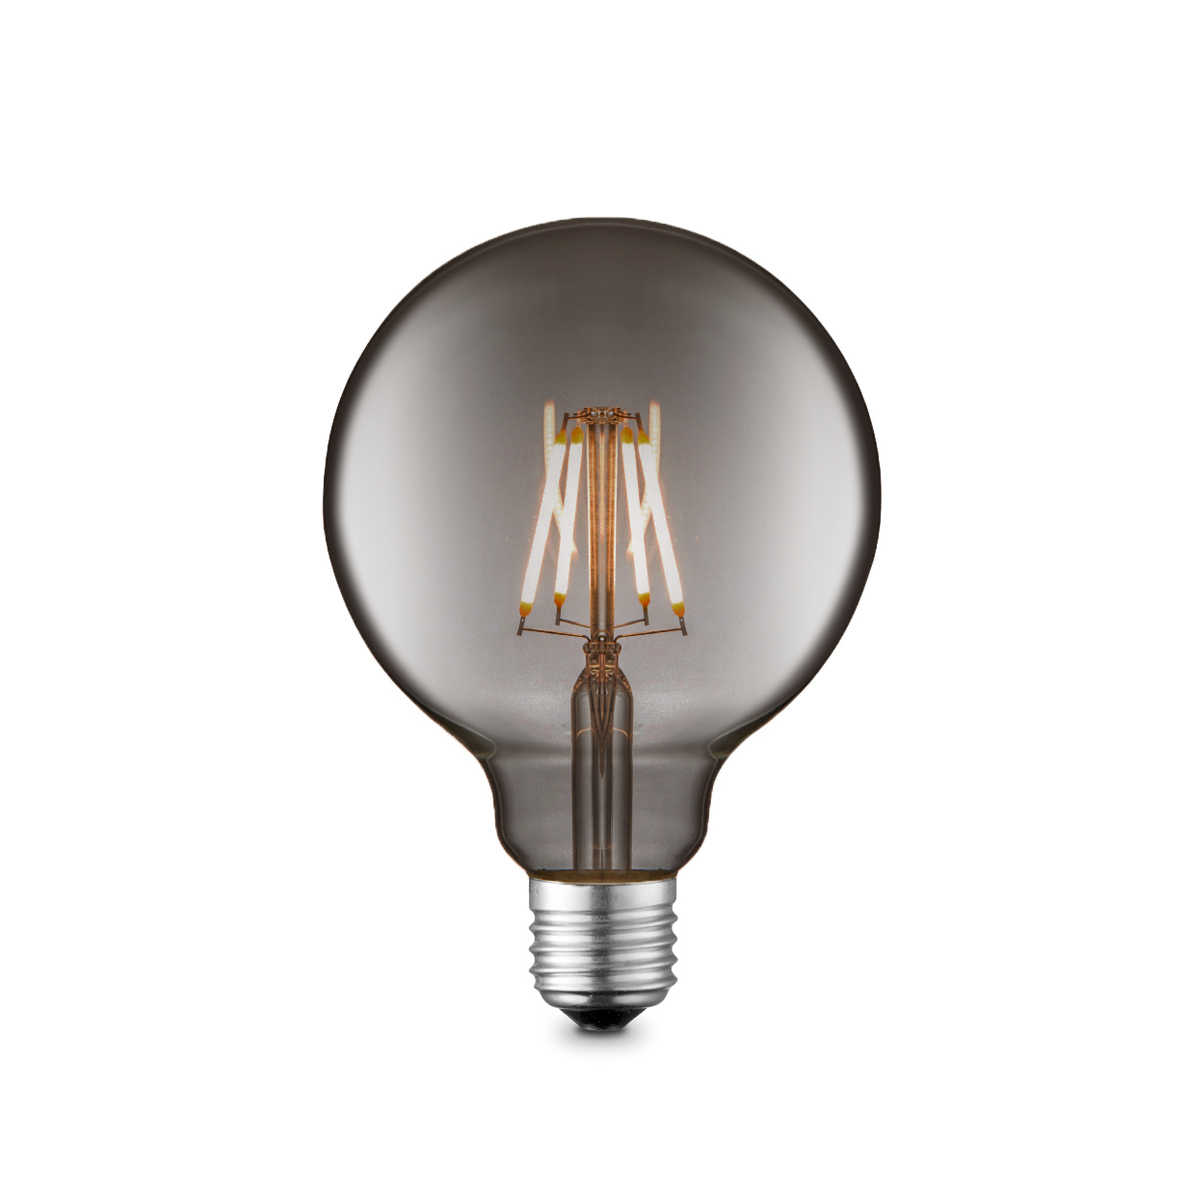 Tangla lighting - TLB-8004-06TM - LED Light Bulb Deco filament - G95 6W titanium - dimmable - globe - E27